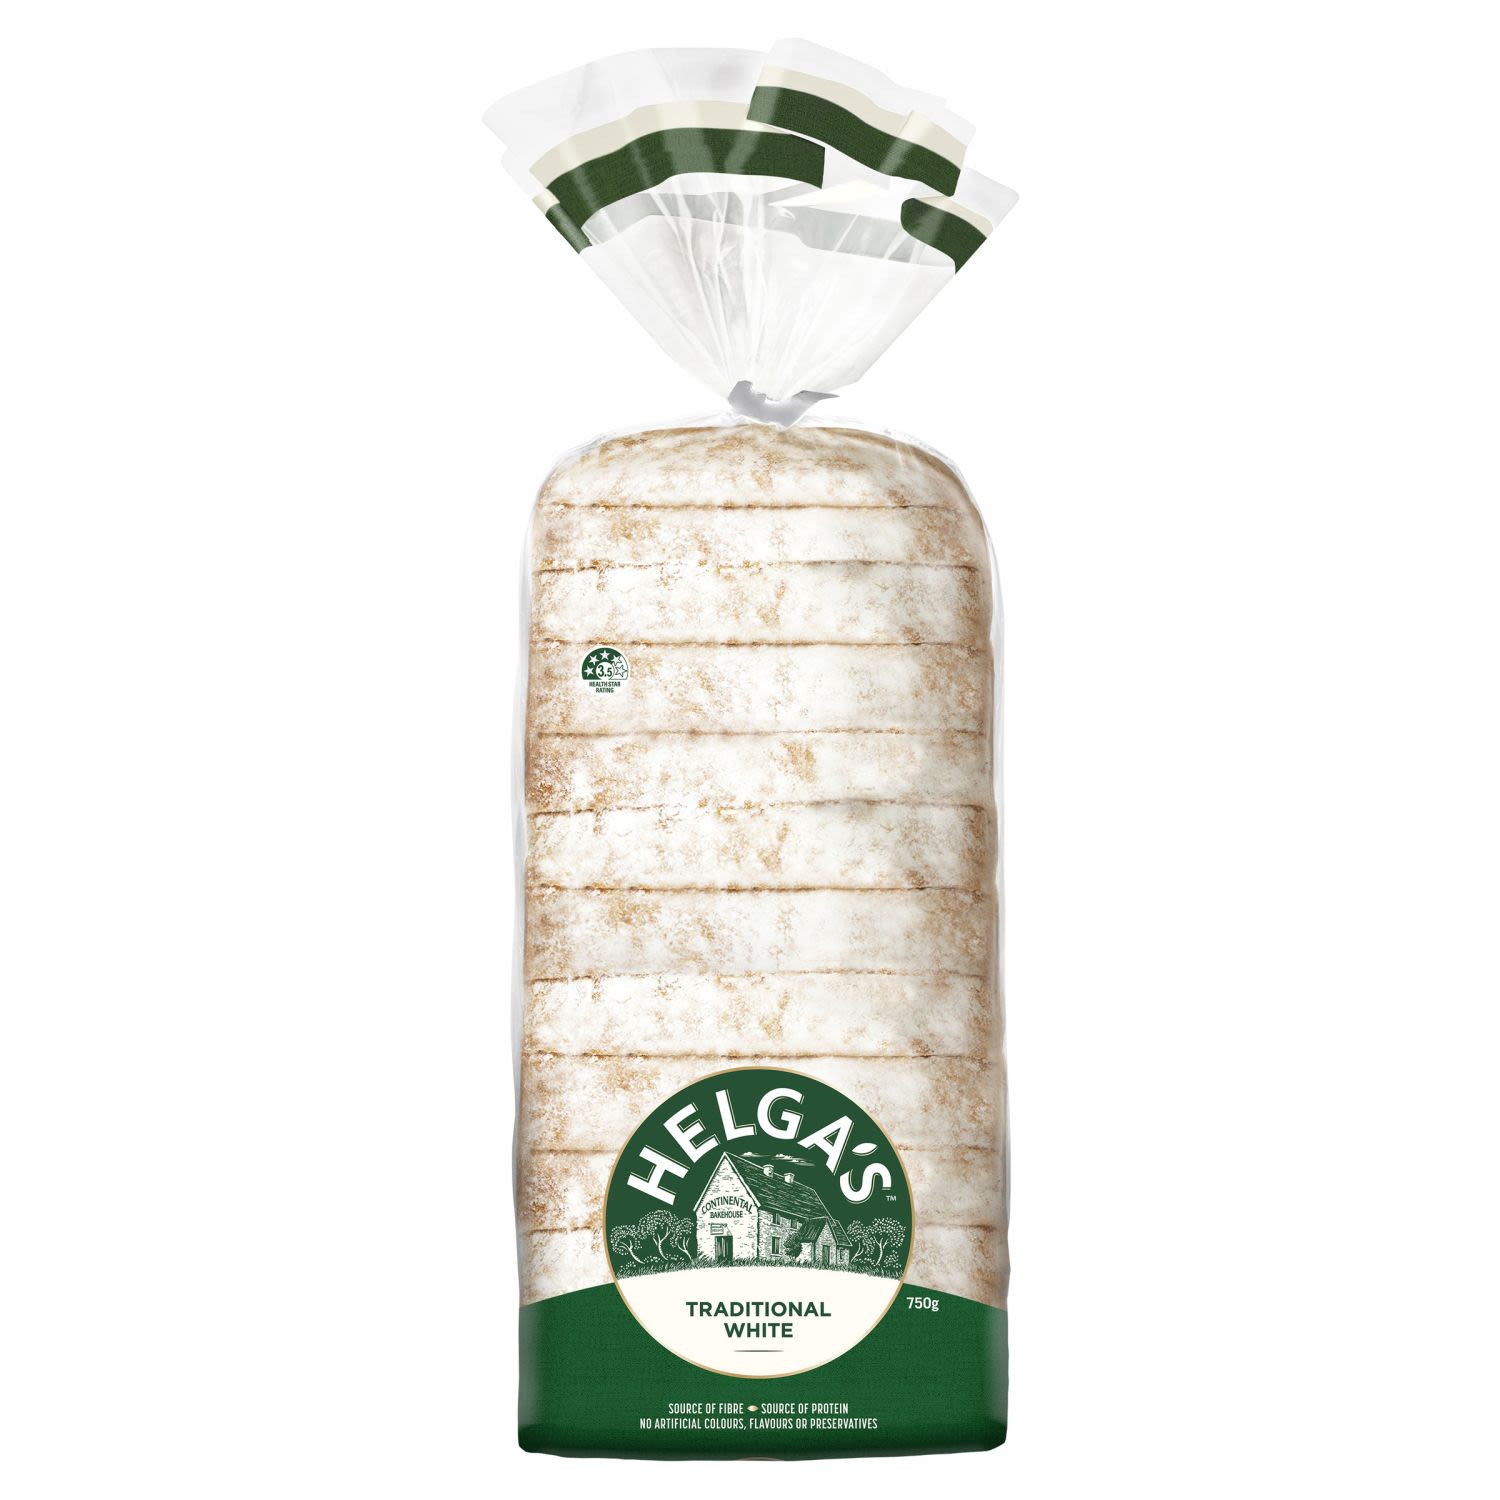 Helga's Traditional White Bread, 750 Gram